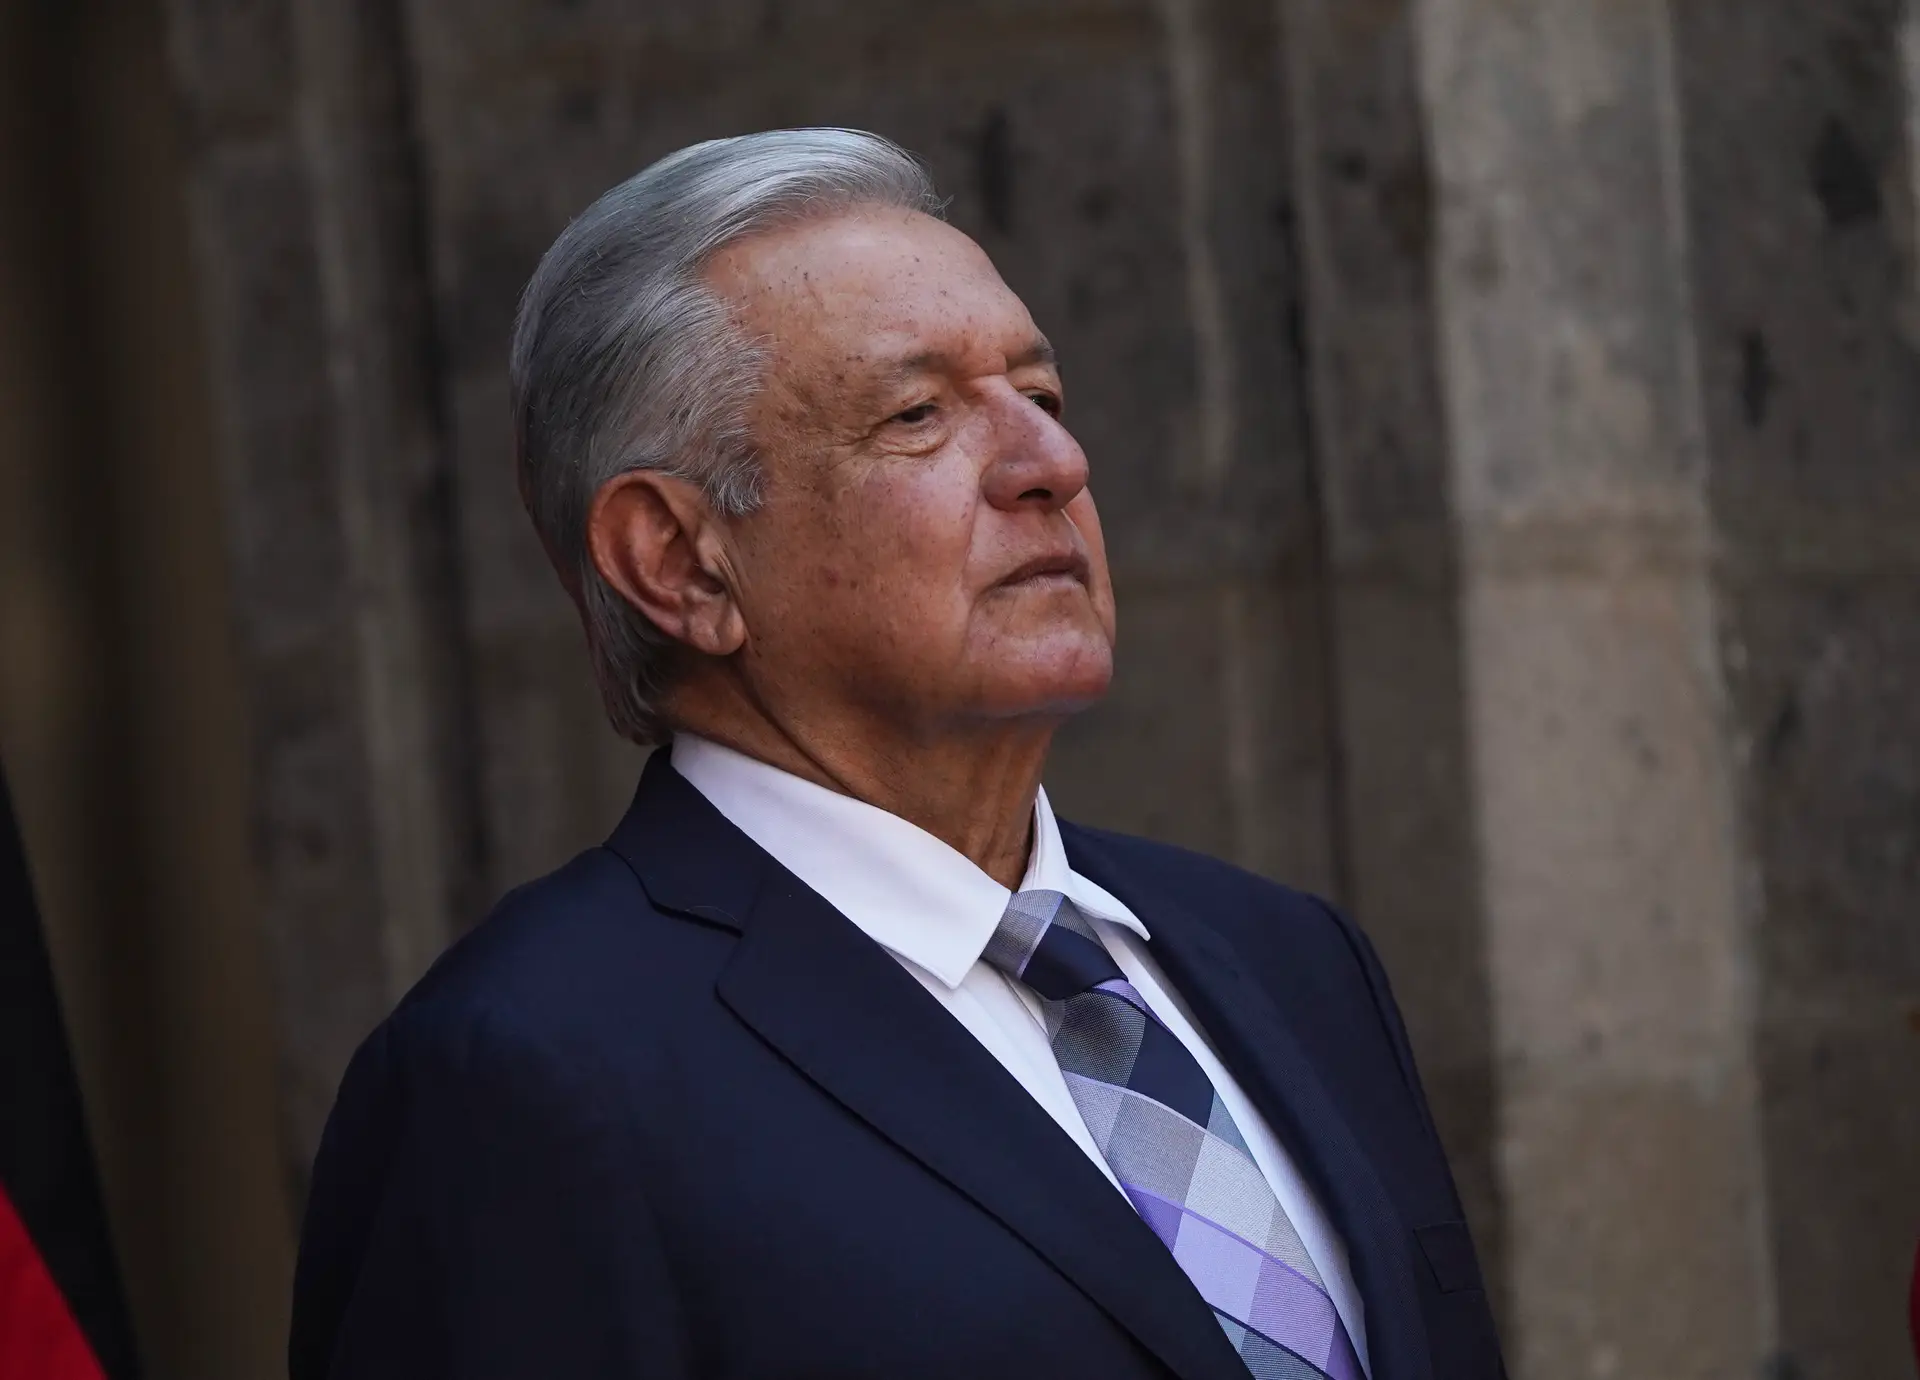 “Continua a pausa”: Presidente do México fala sobre relações com Espanha